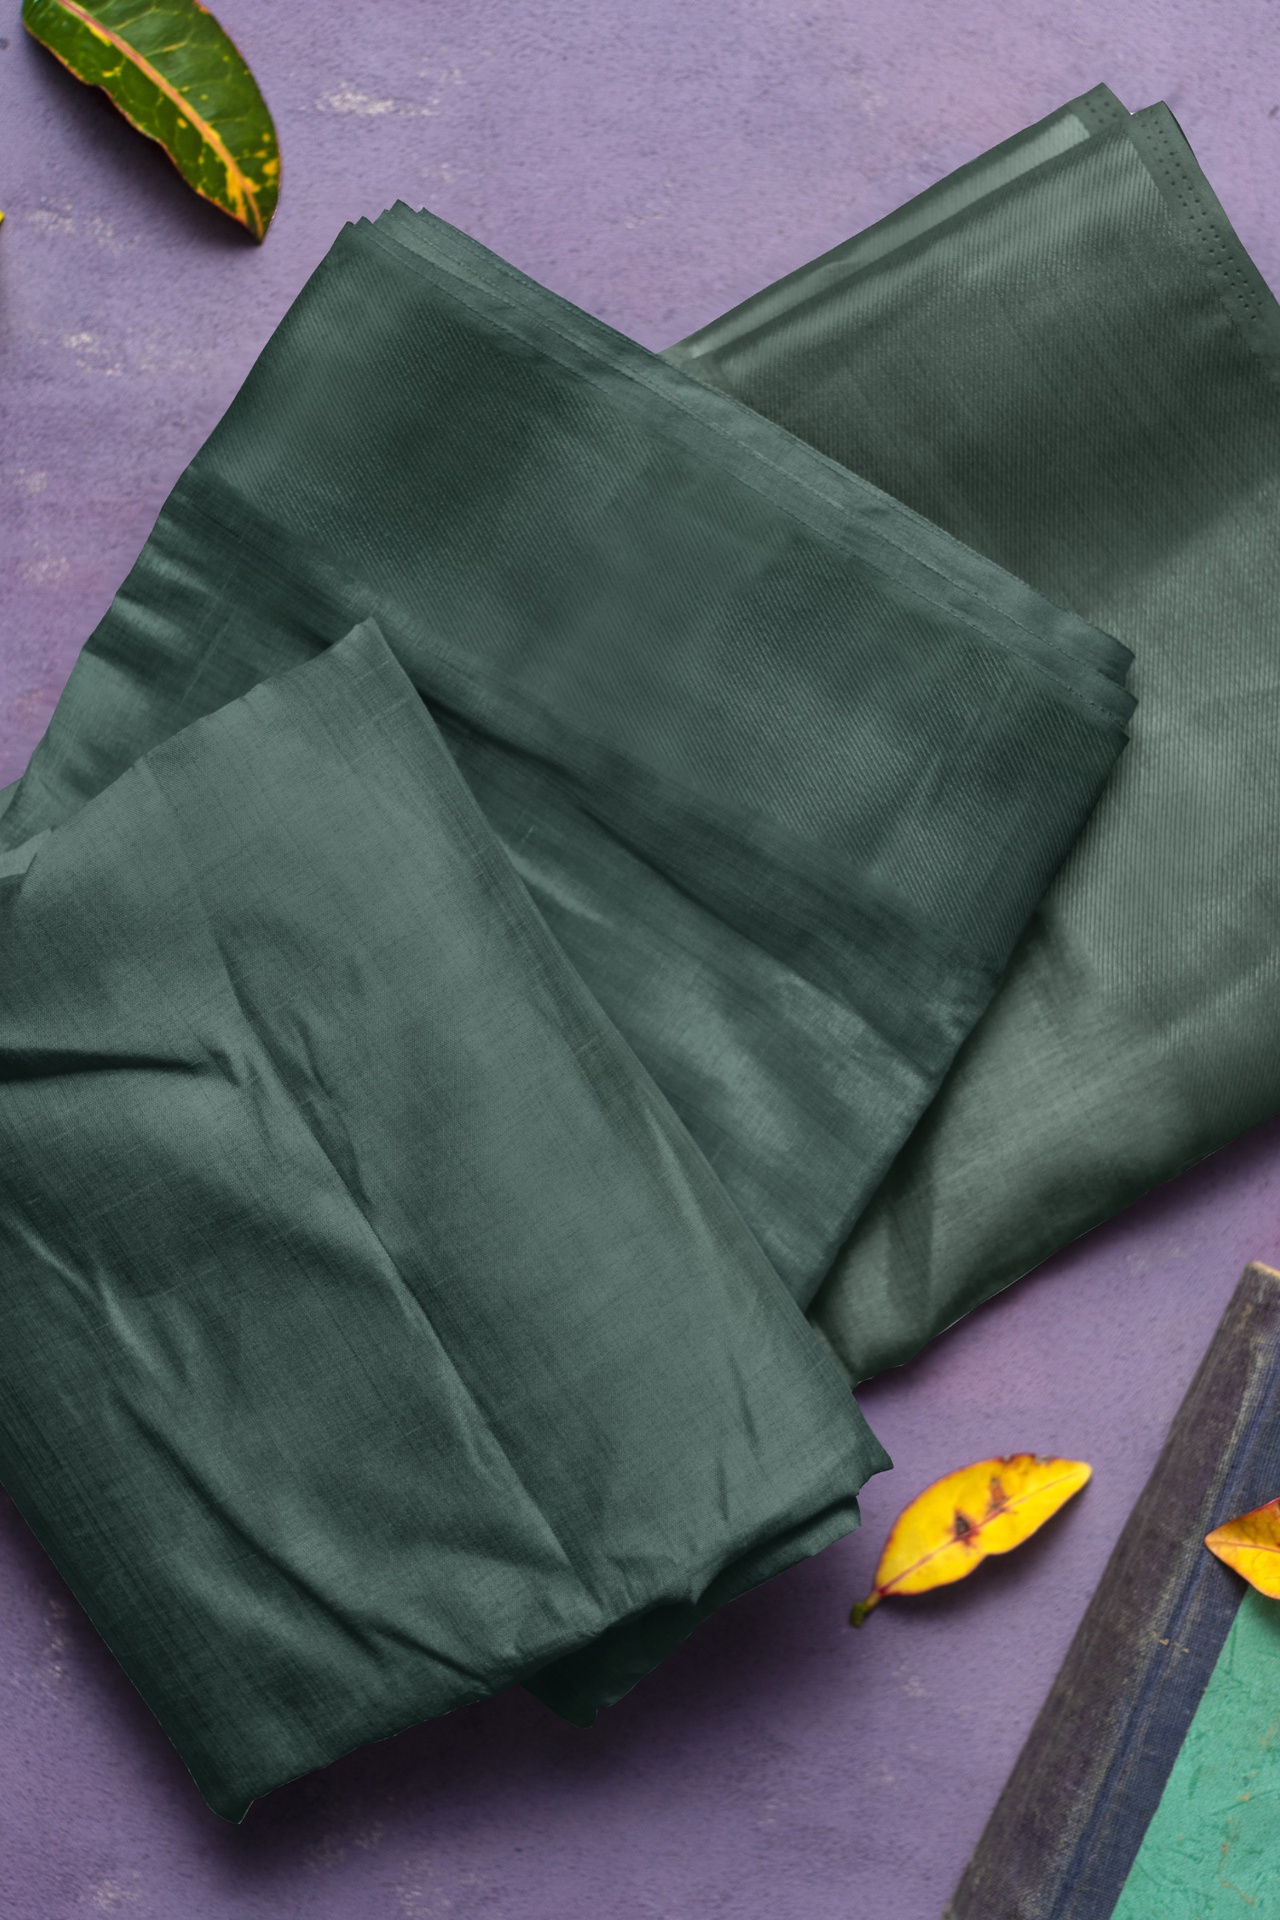 Viridian Green  Handspun Handwoven Fabric